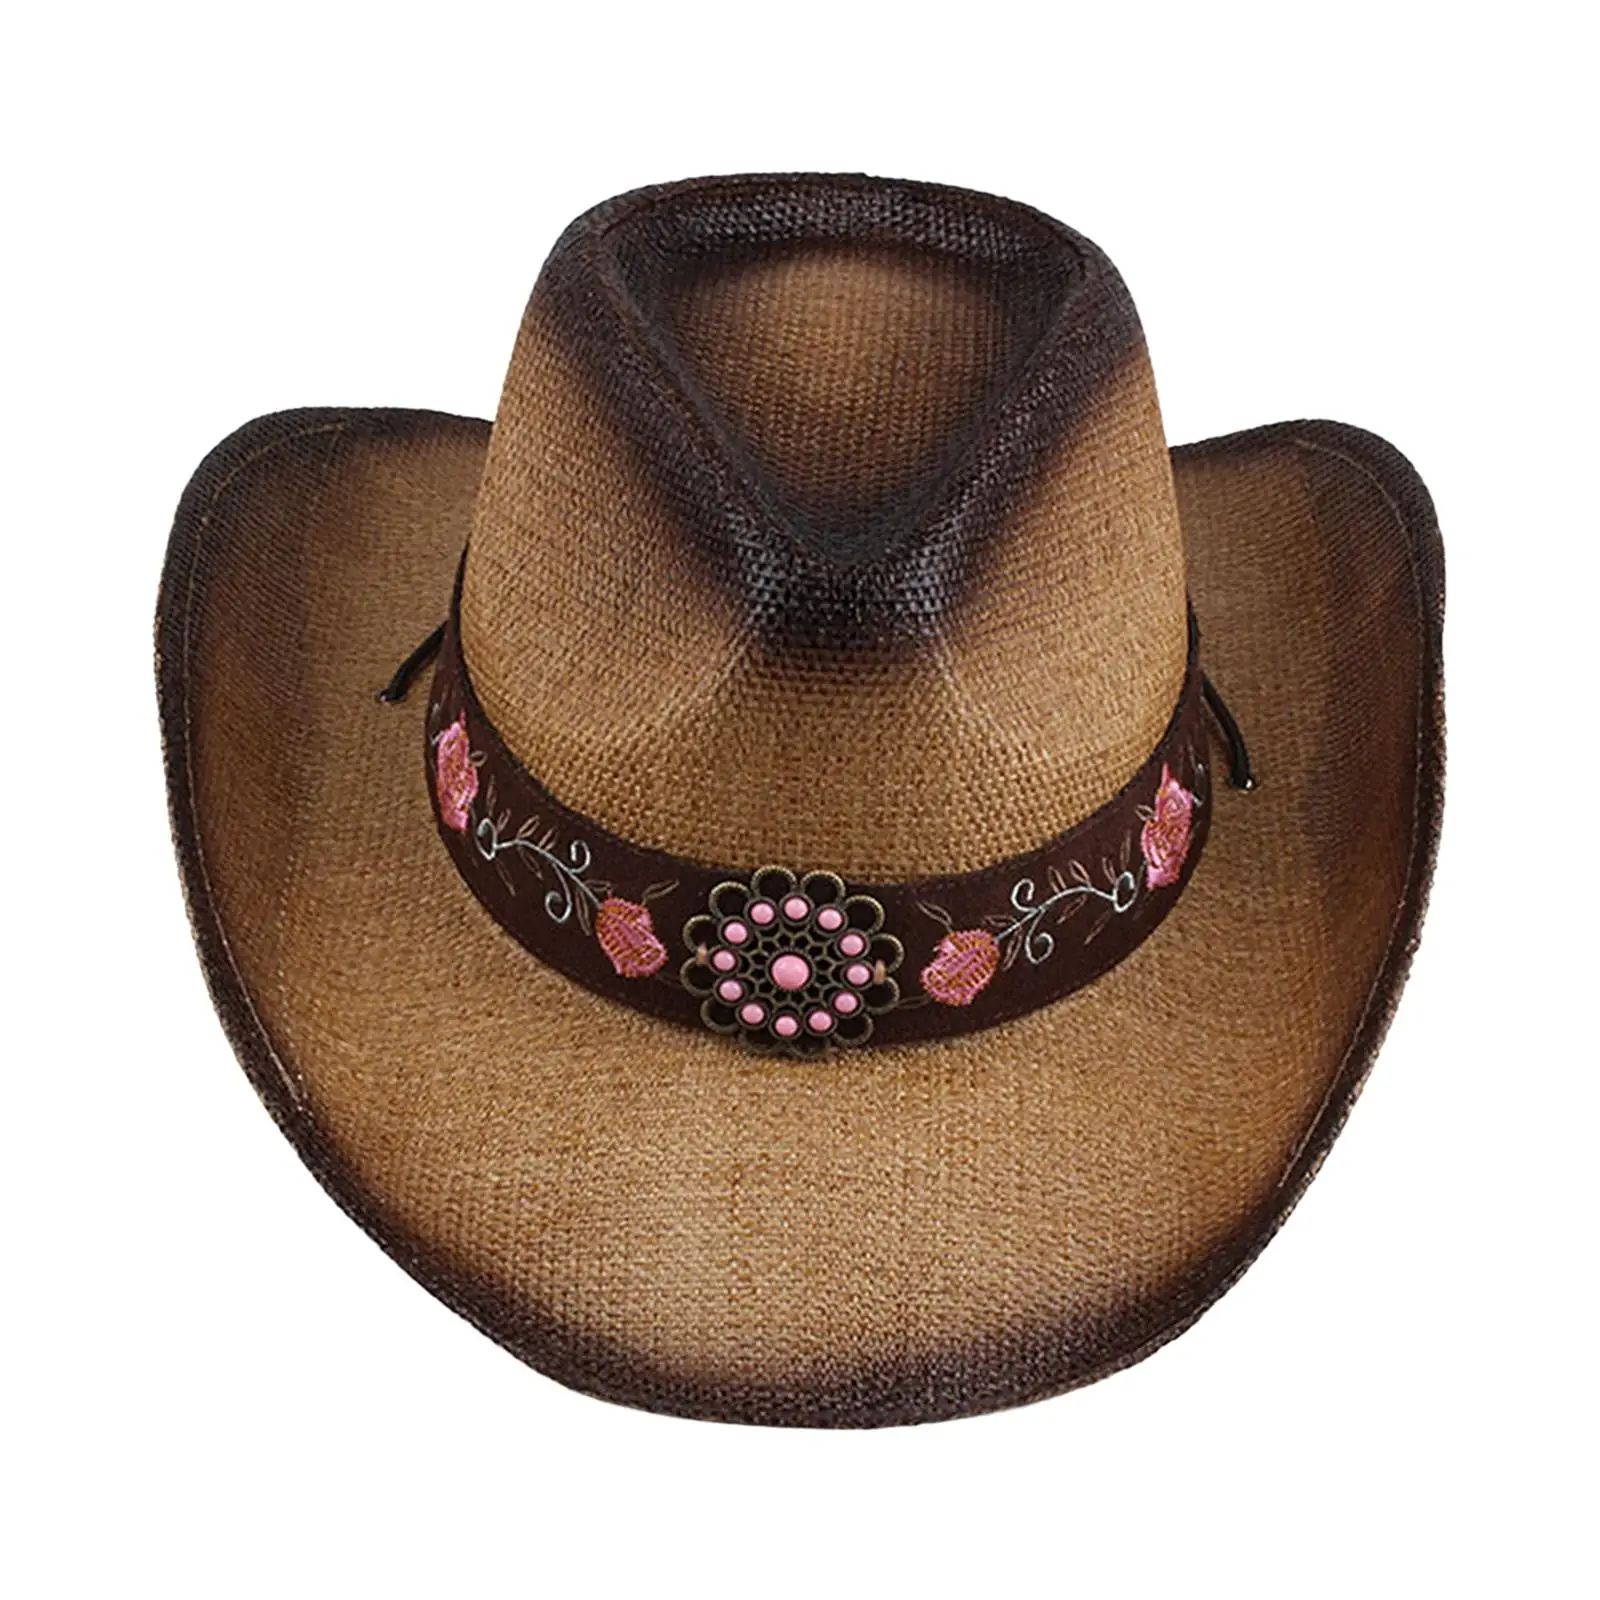 Western  Hat Photo Props Sun Hat Summer Big Brim Straw for Men Women